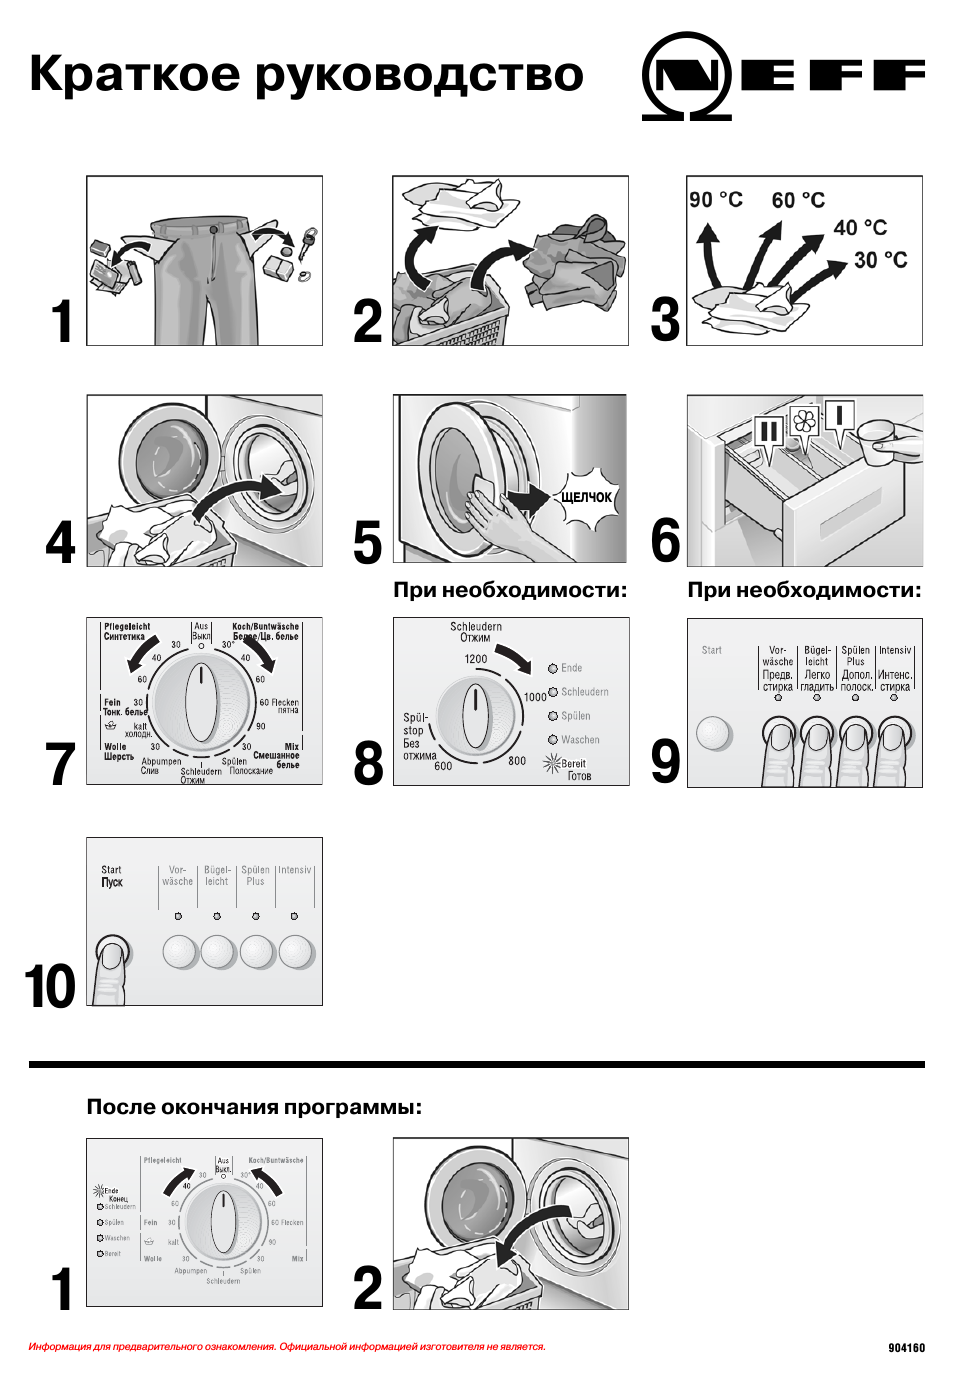 Инструкция машинки для удаления. Как пользоваться стиральной машиной автомат. Как научиться пользоваться стиральной машиной. Инструкция по использованию стиральной машинки. Как пользоваться стиральной машинкой.